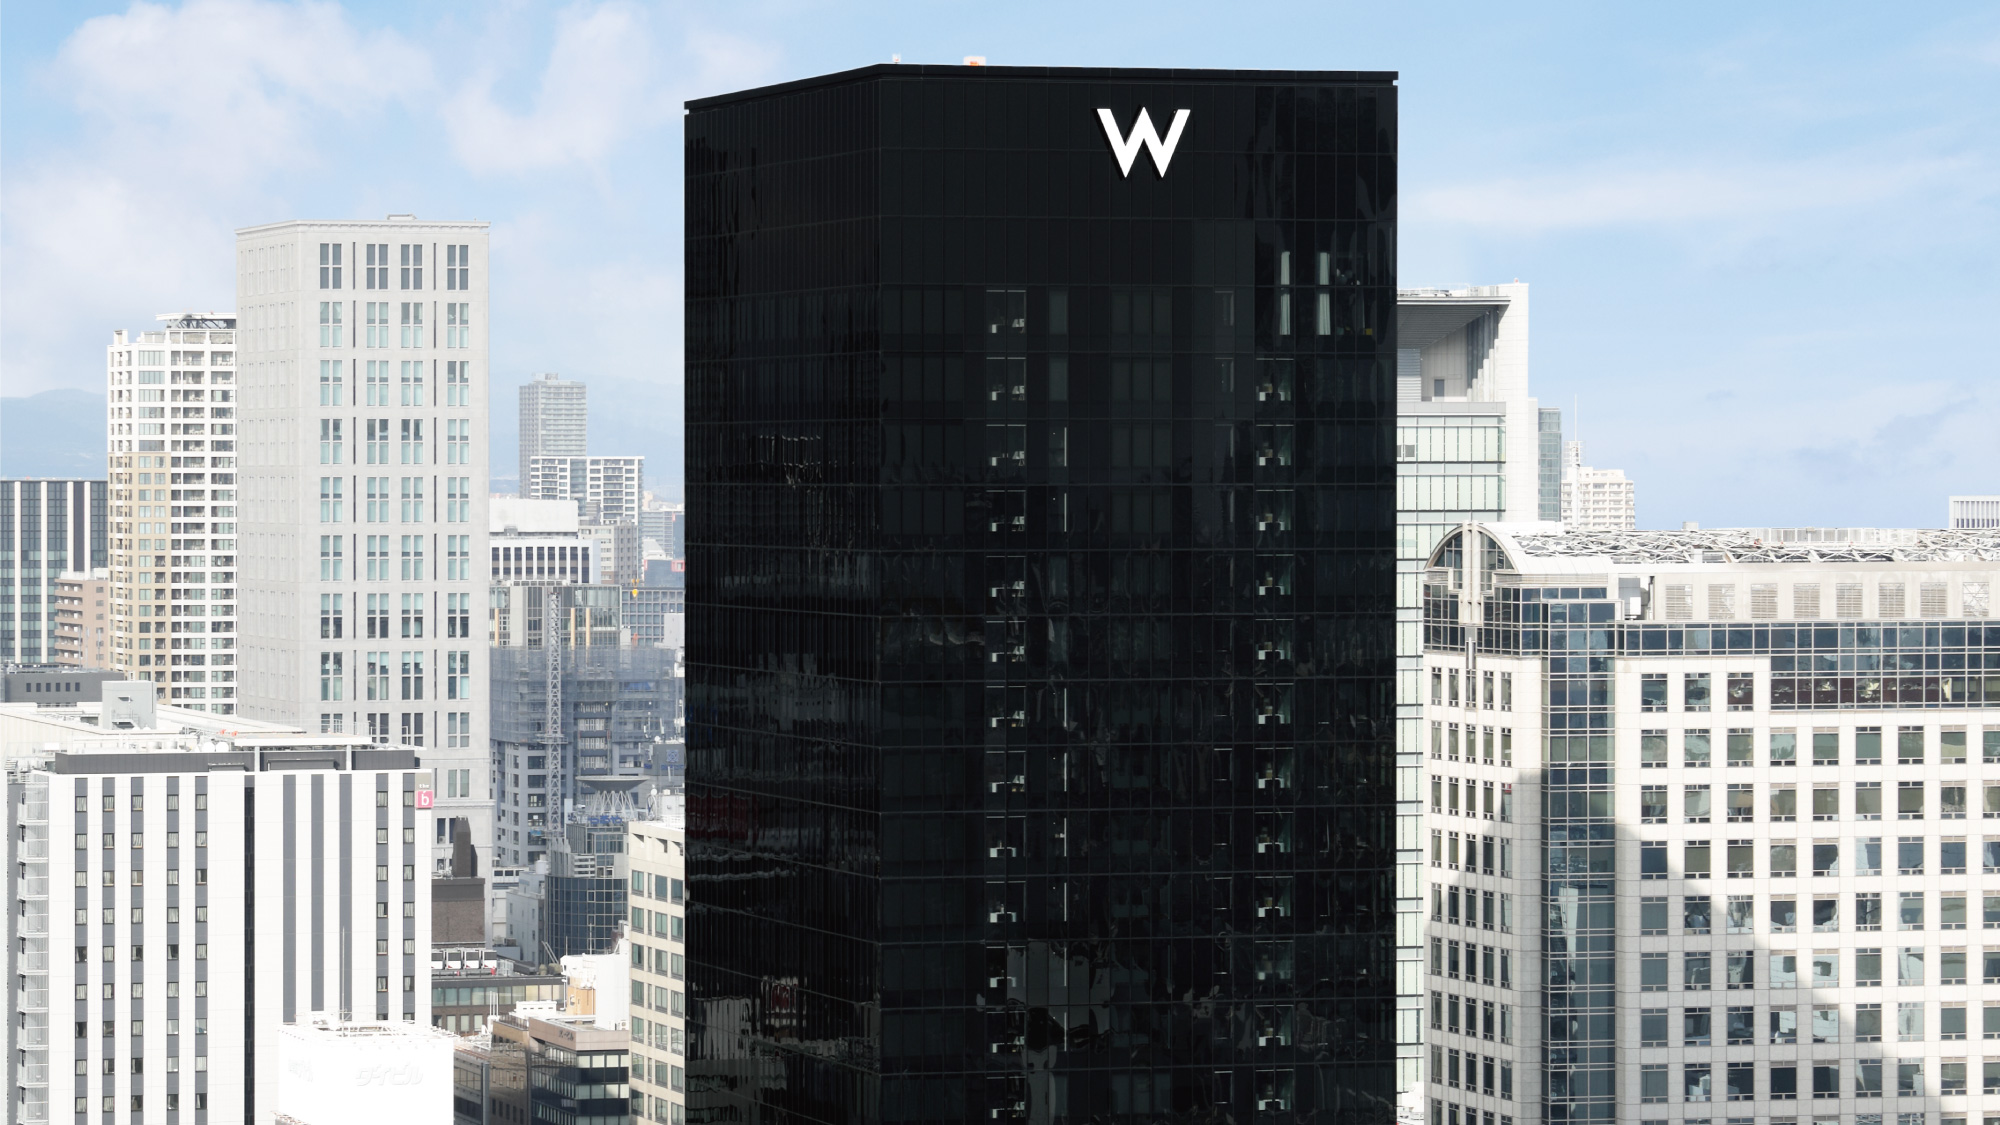 世界的建築家である安藤忠雄氏がデザインを監修。地上27階建てのスタイリッシュな外観